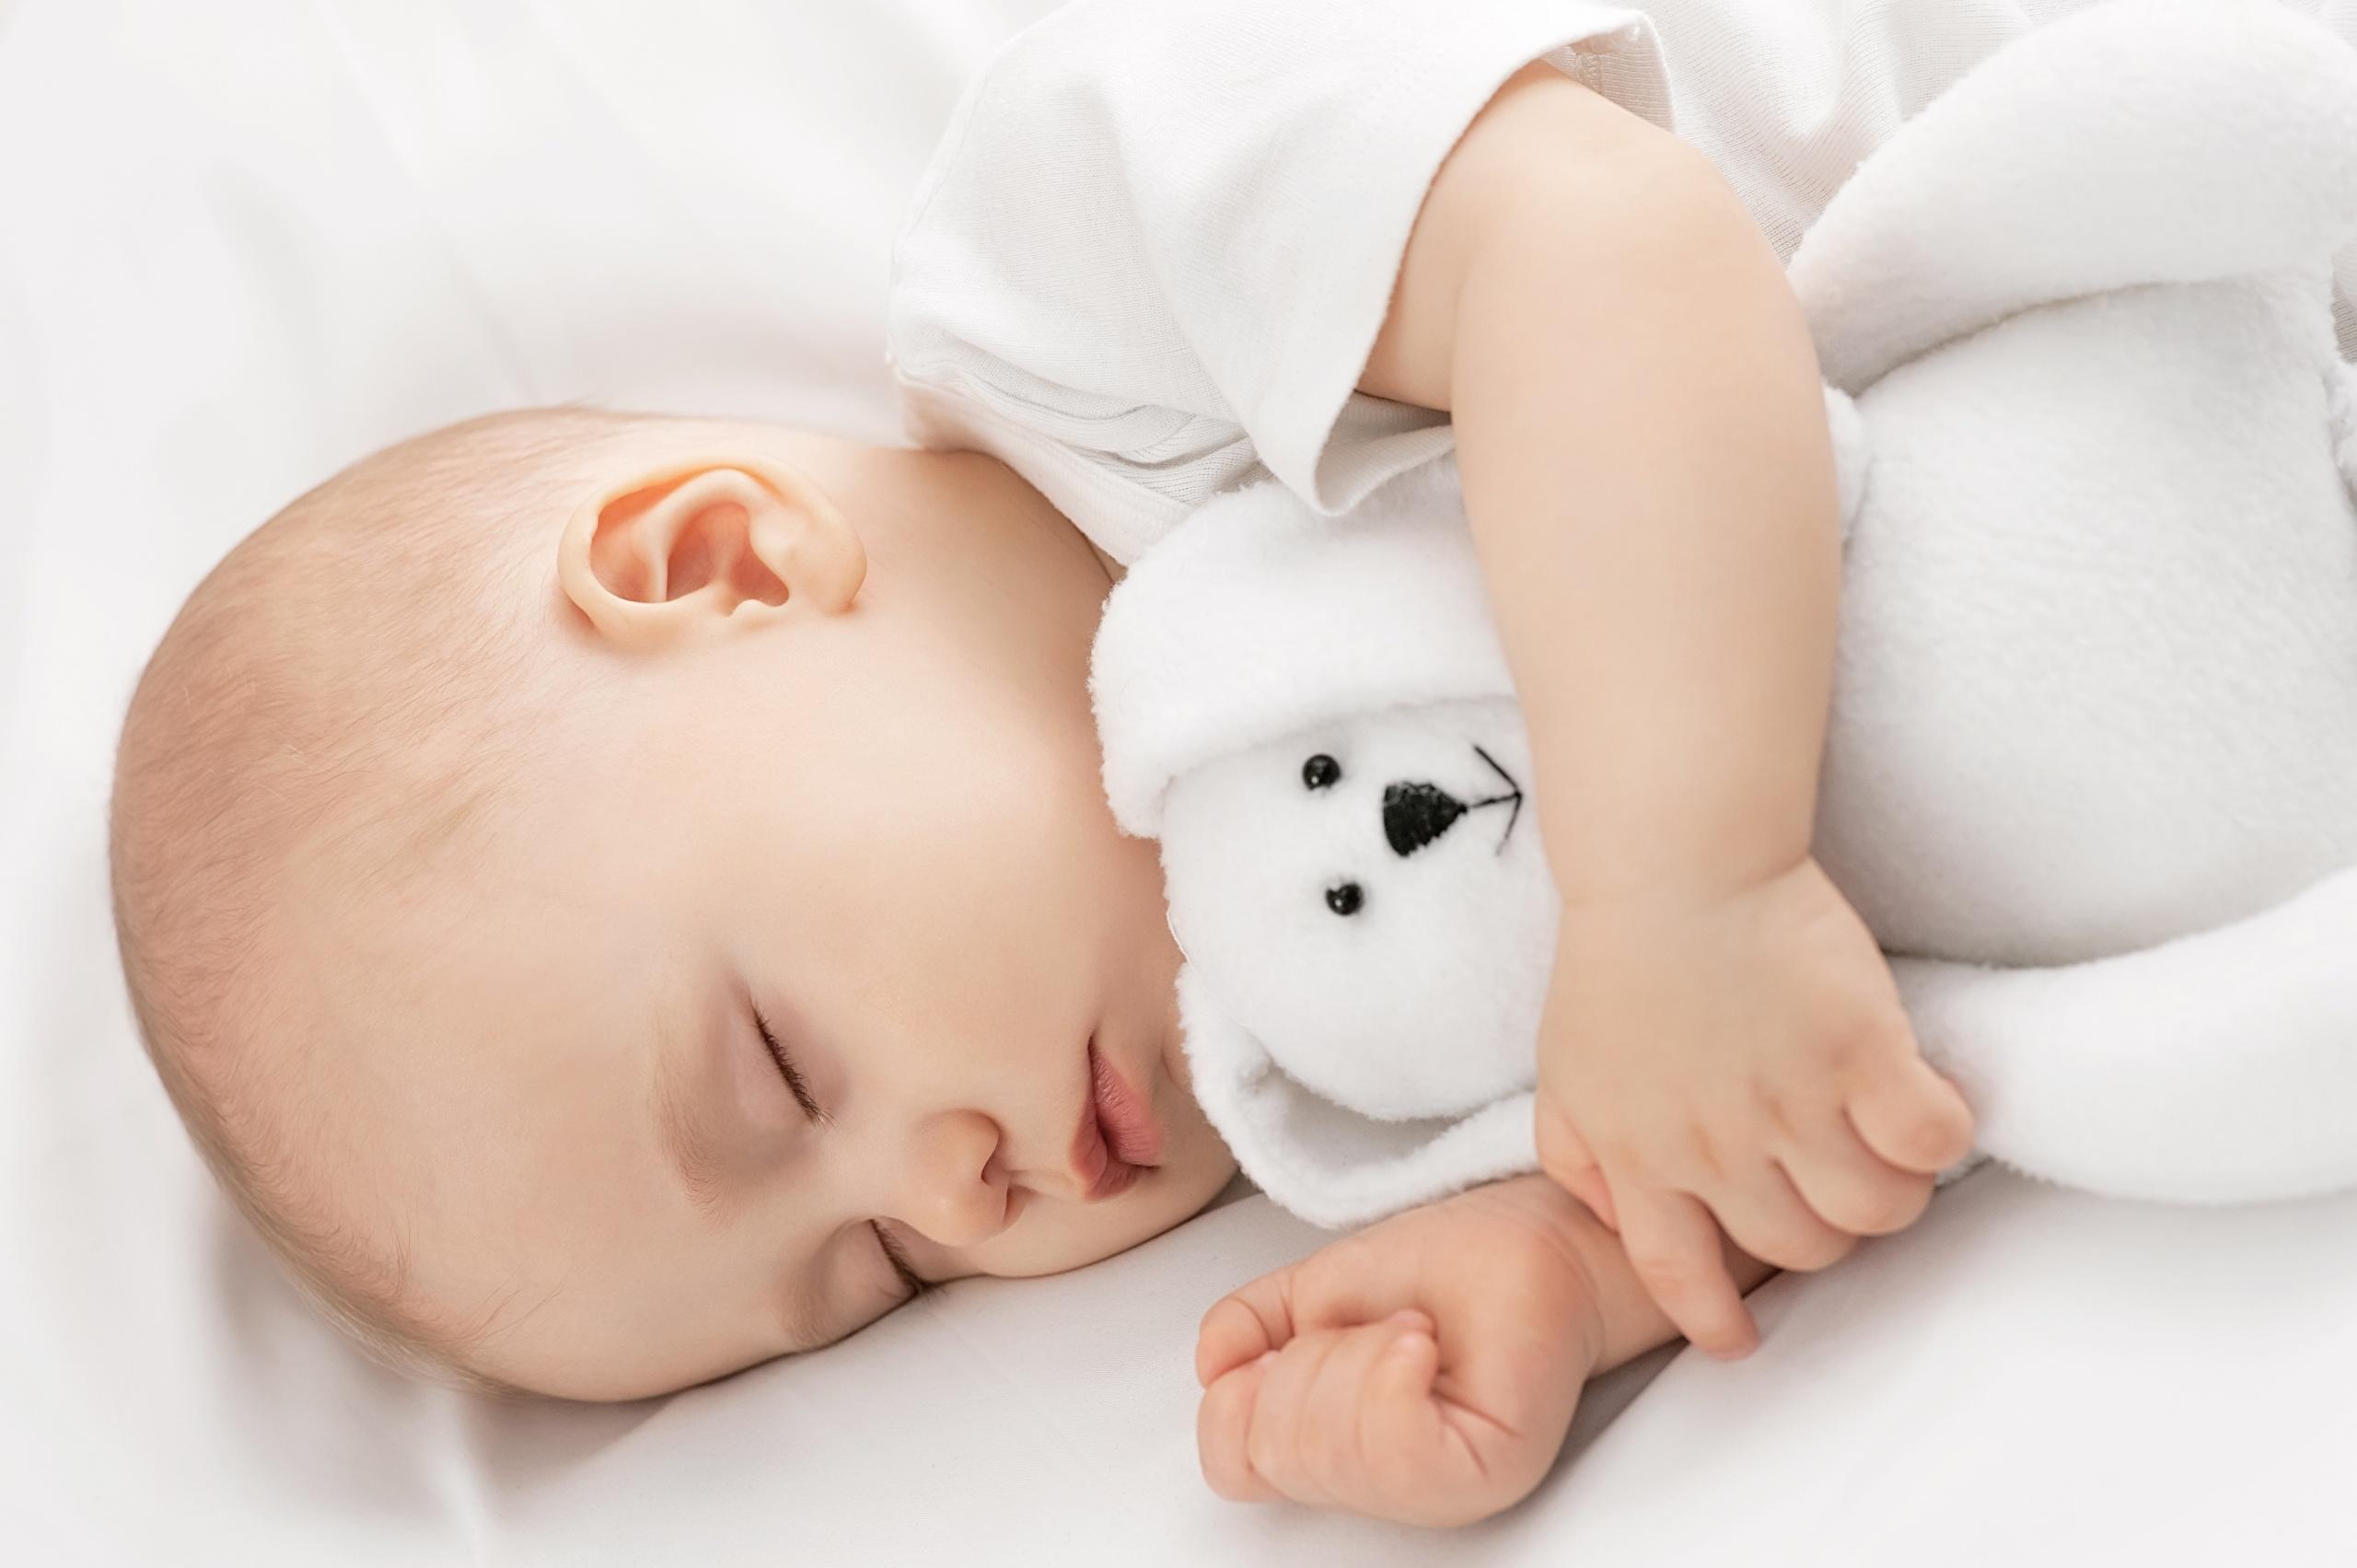 При общем недомогании дети любят много спать